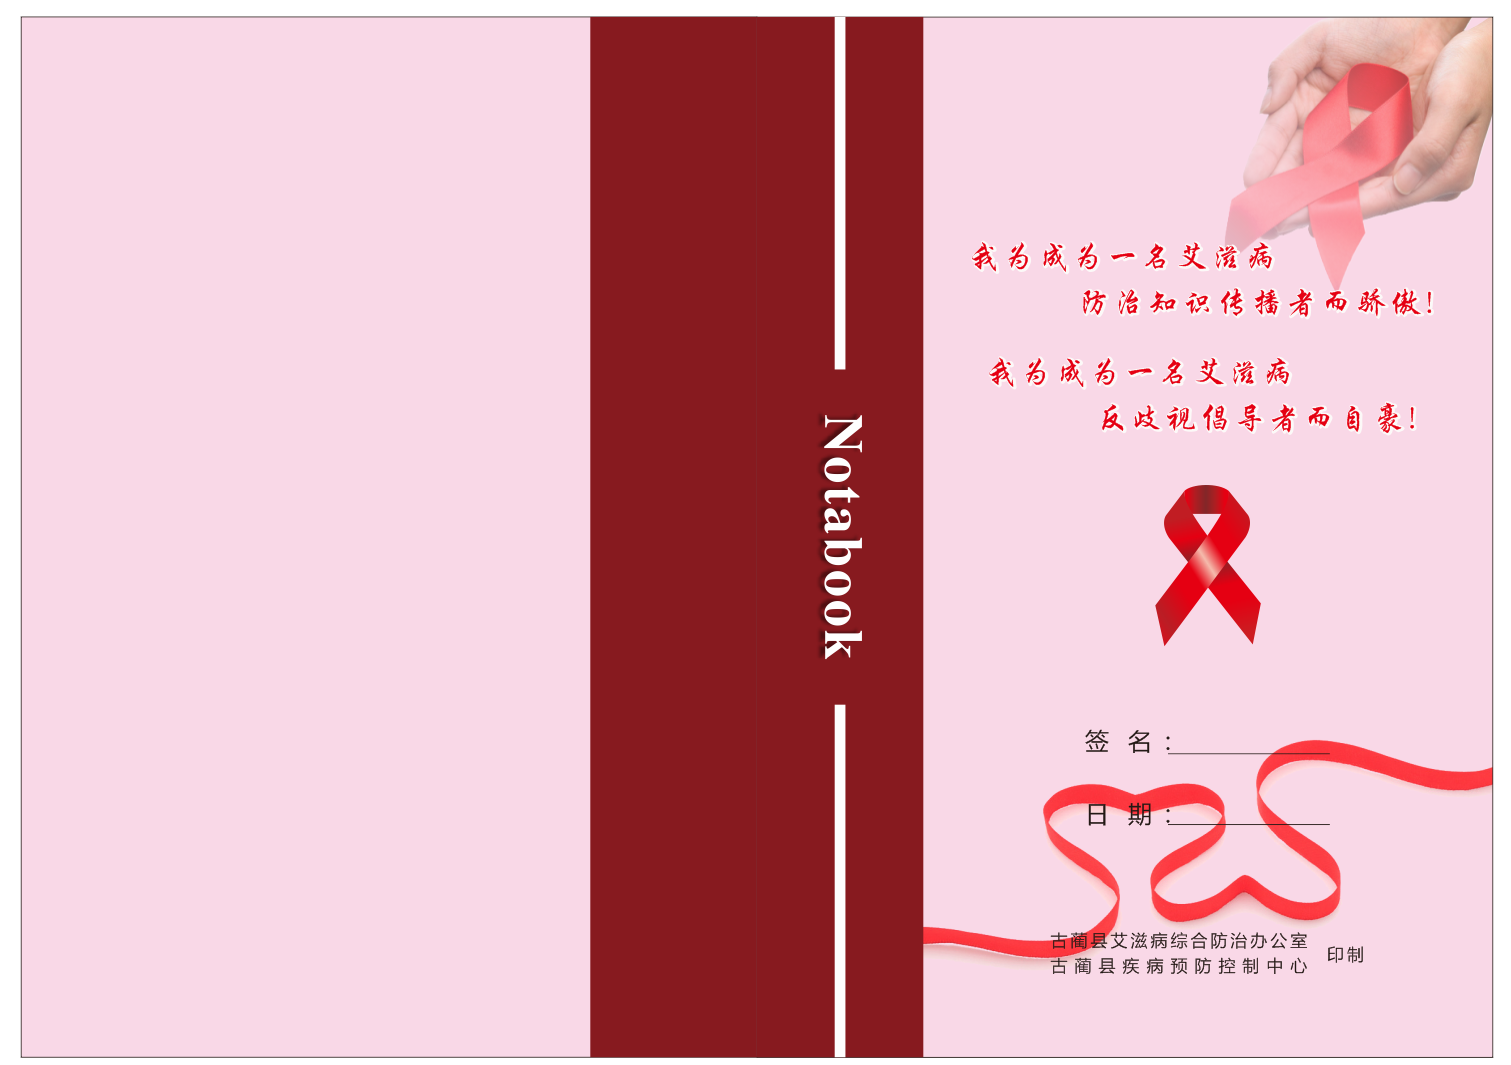 古蔺县疾病预防控制中心2021年艾滋宣传 学生笔记本.png